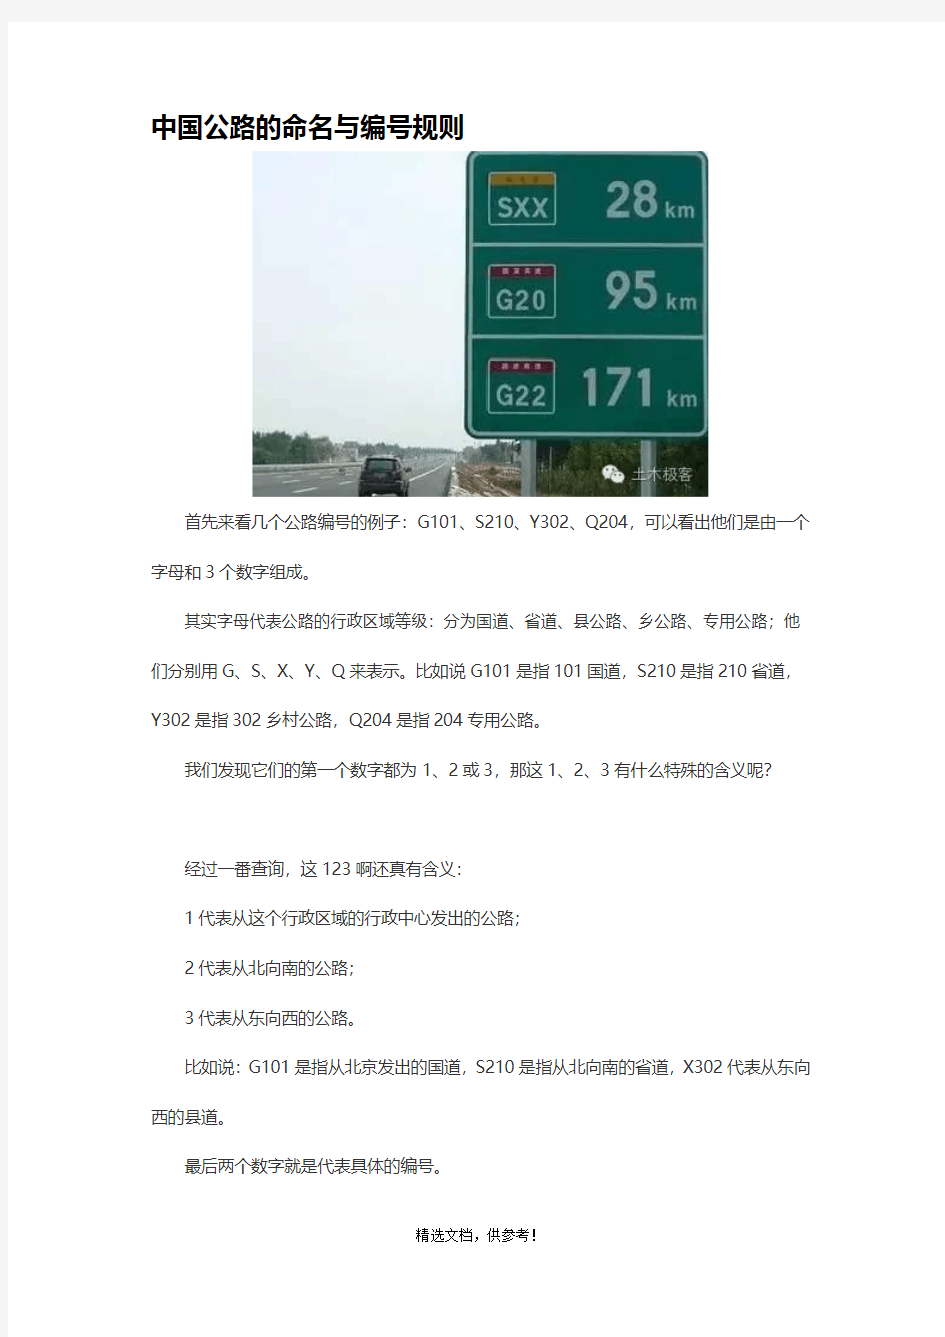 中国公路的命名与编号规则